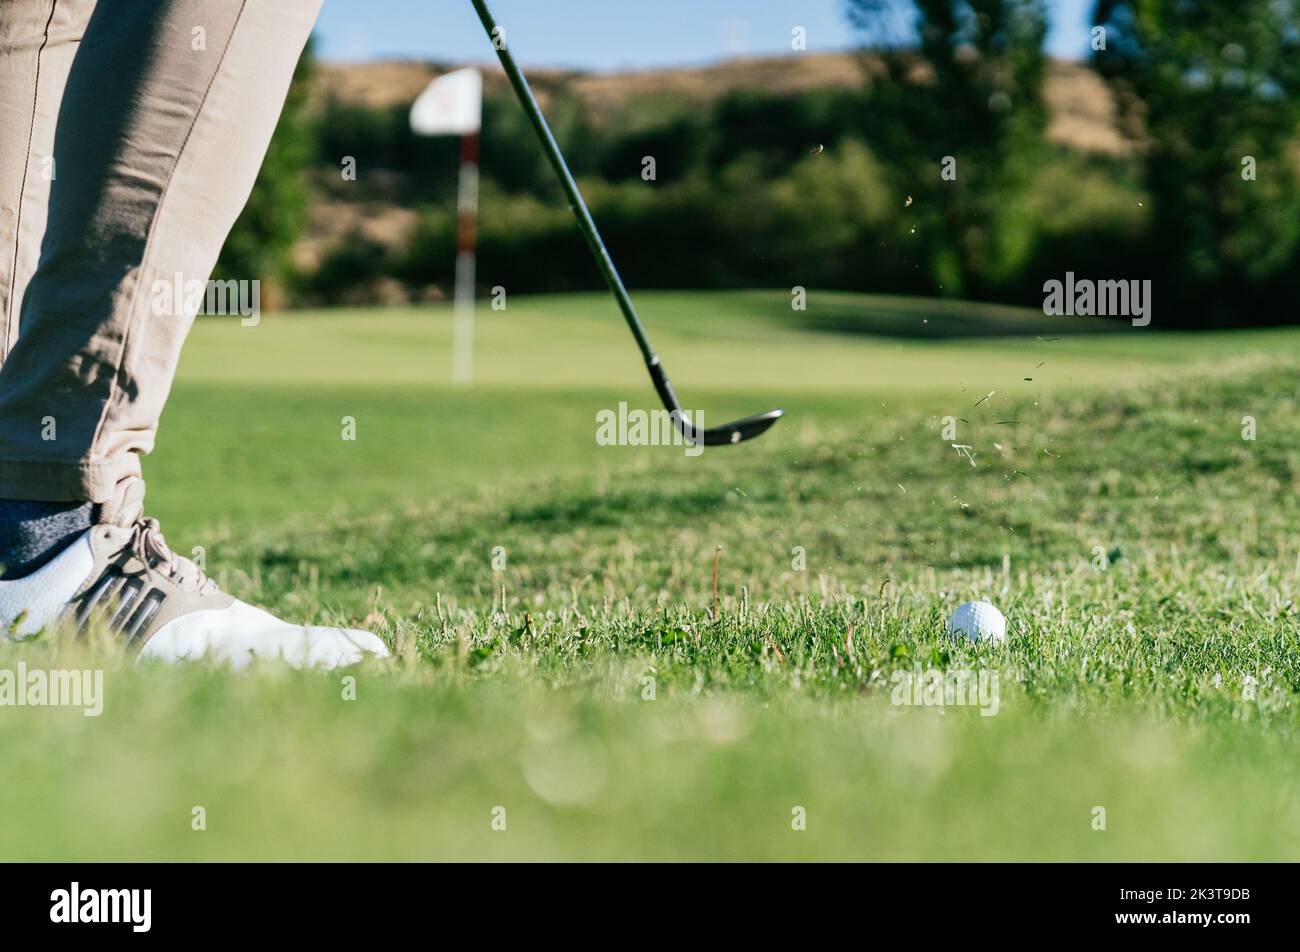 Vue latérale d'un petit mâle méconnaissable en vêtements décontractés jouant au golf sur une pelouse bien entretenue par temps ensoleillé Banque D'Images